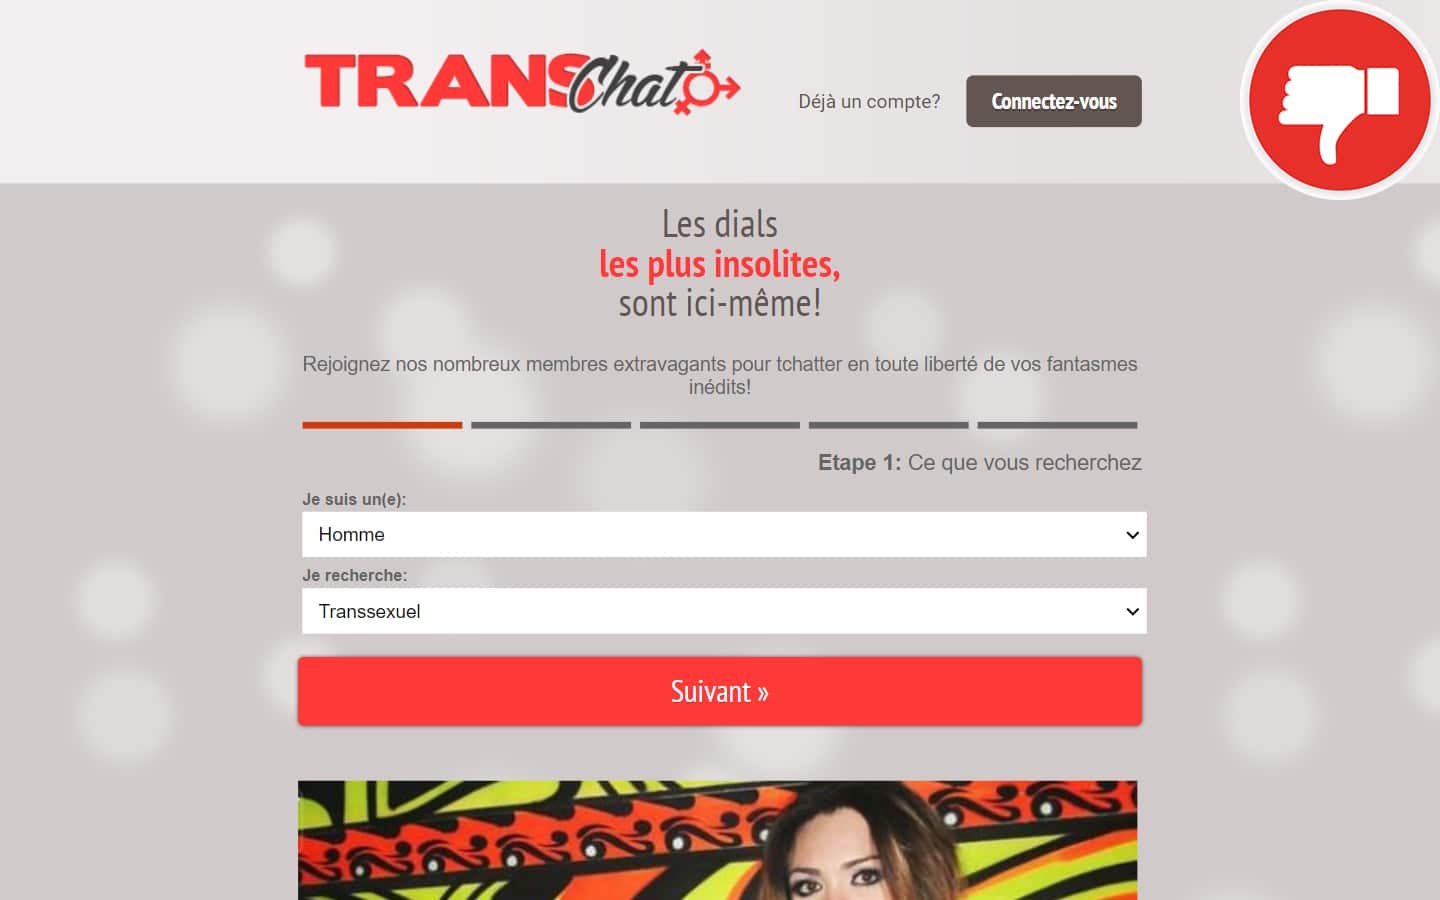 TransChat.fr